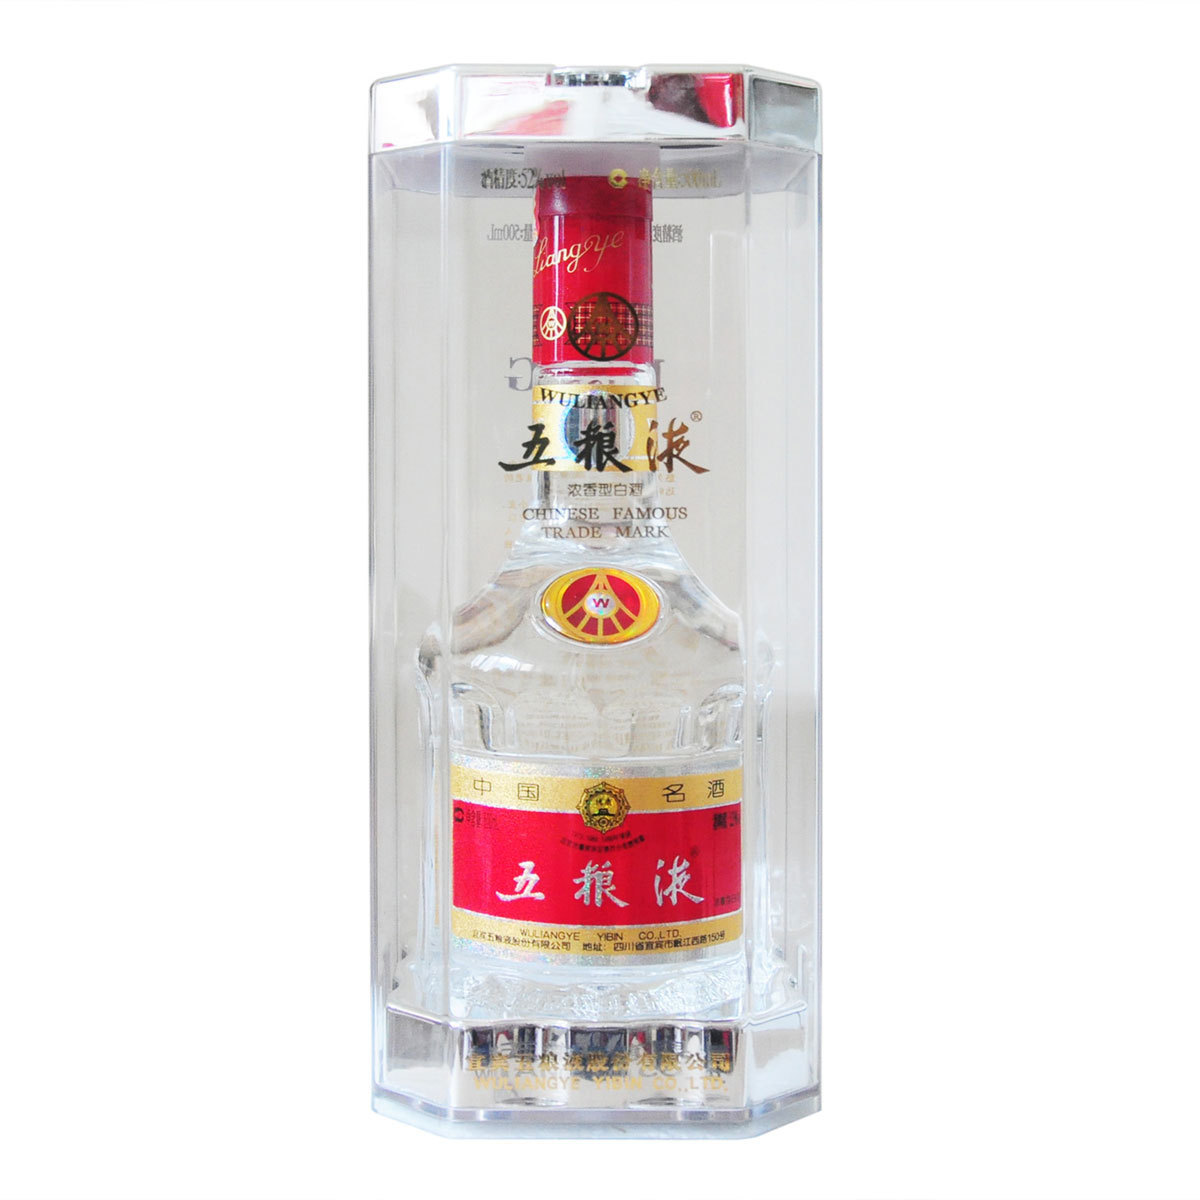 二．五粮液集团保健酒有限责任公司生产的富贵大吉酒650ML装